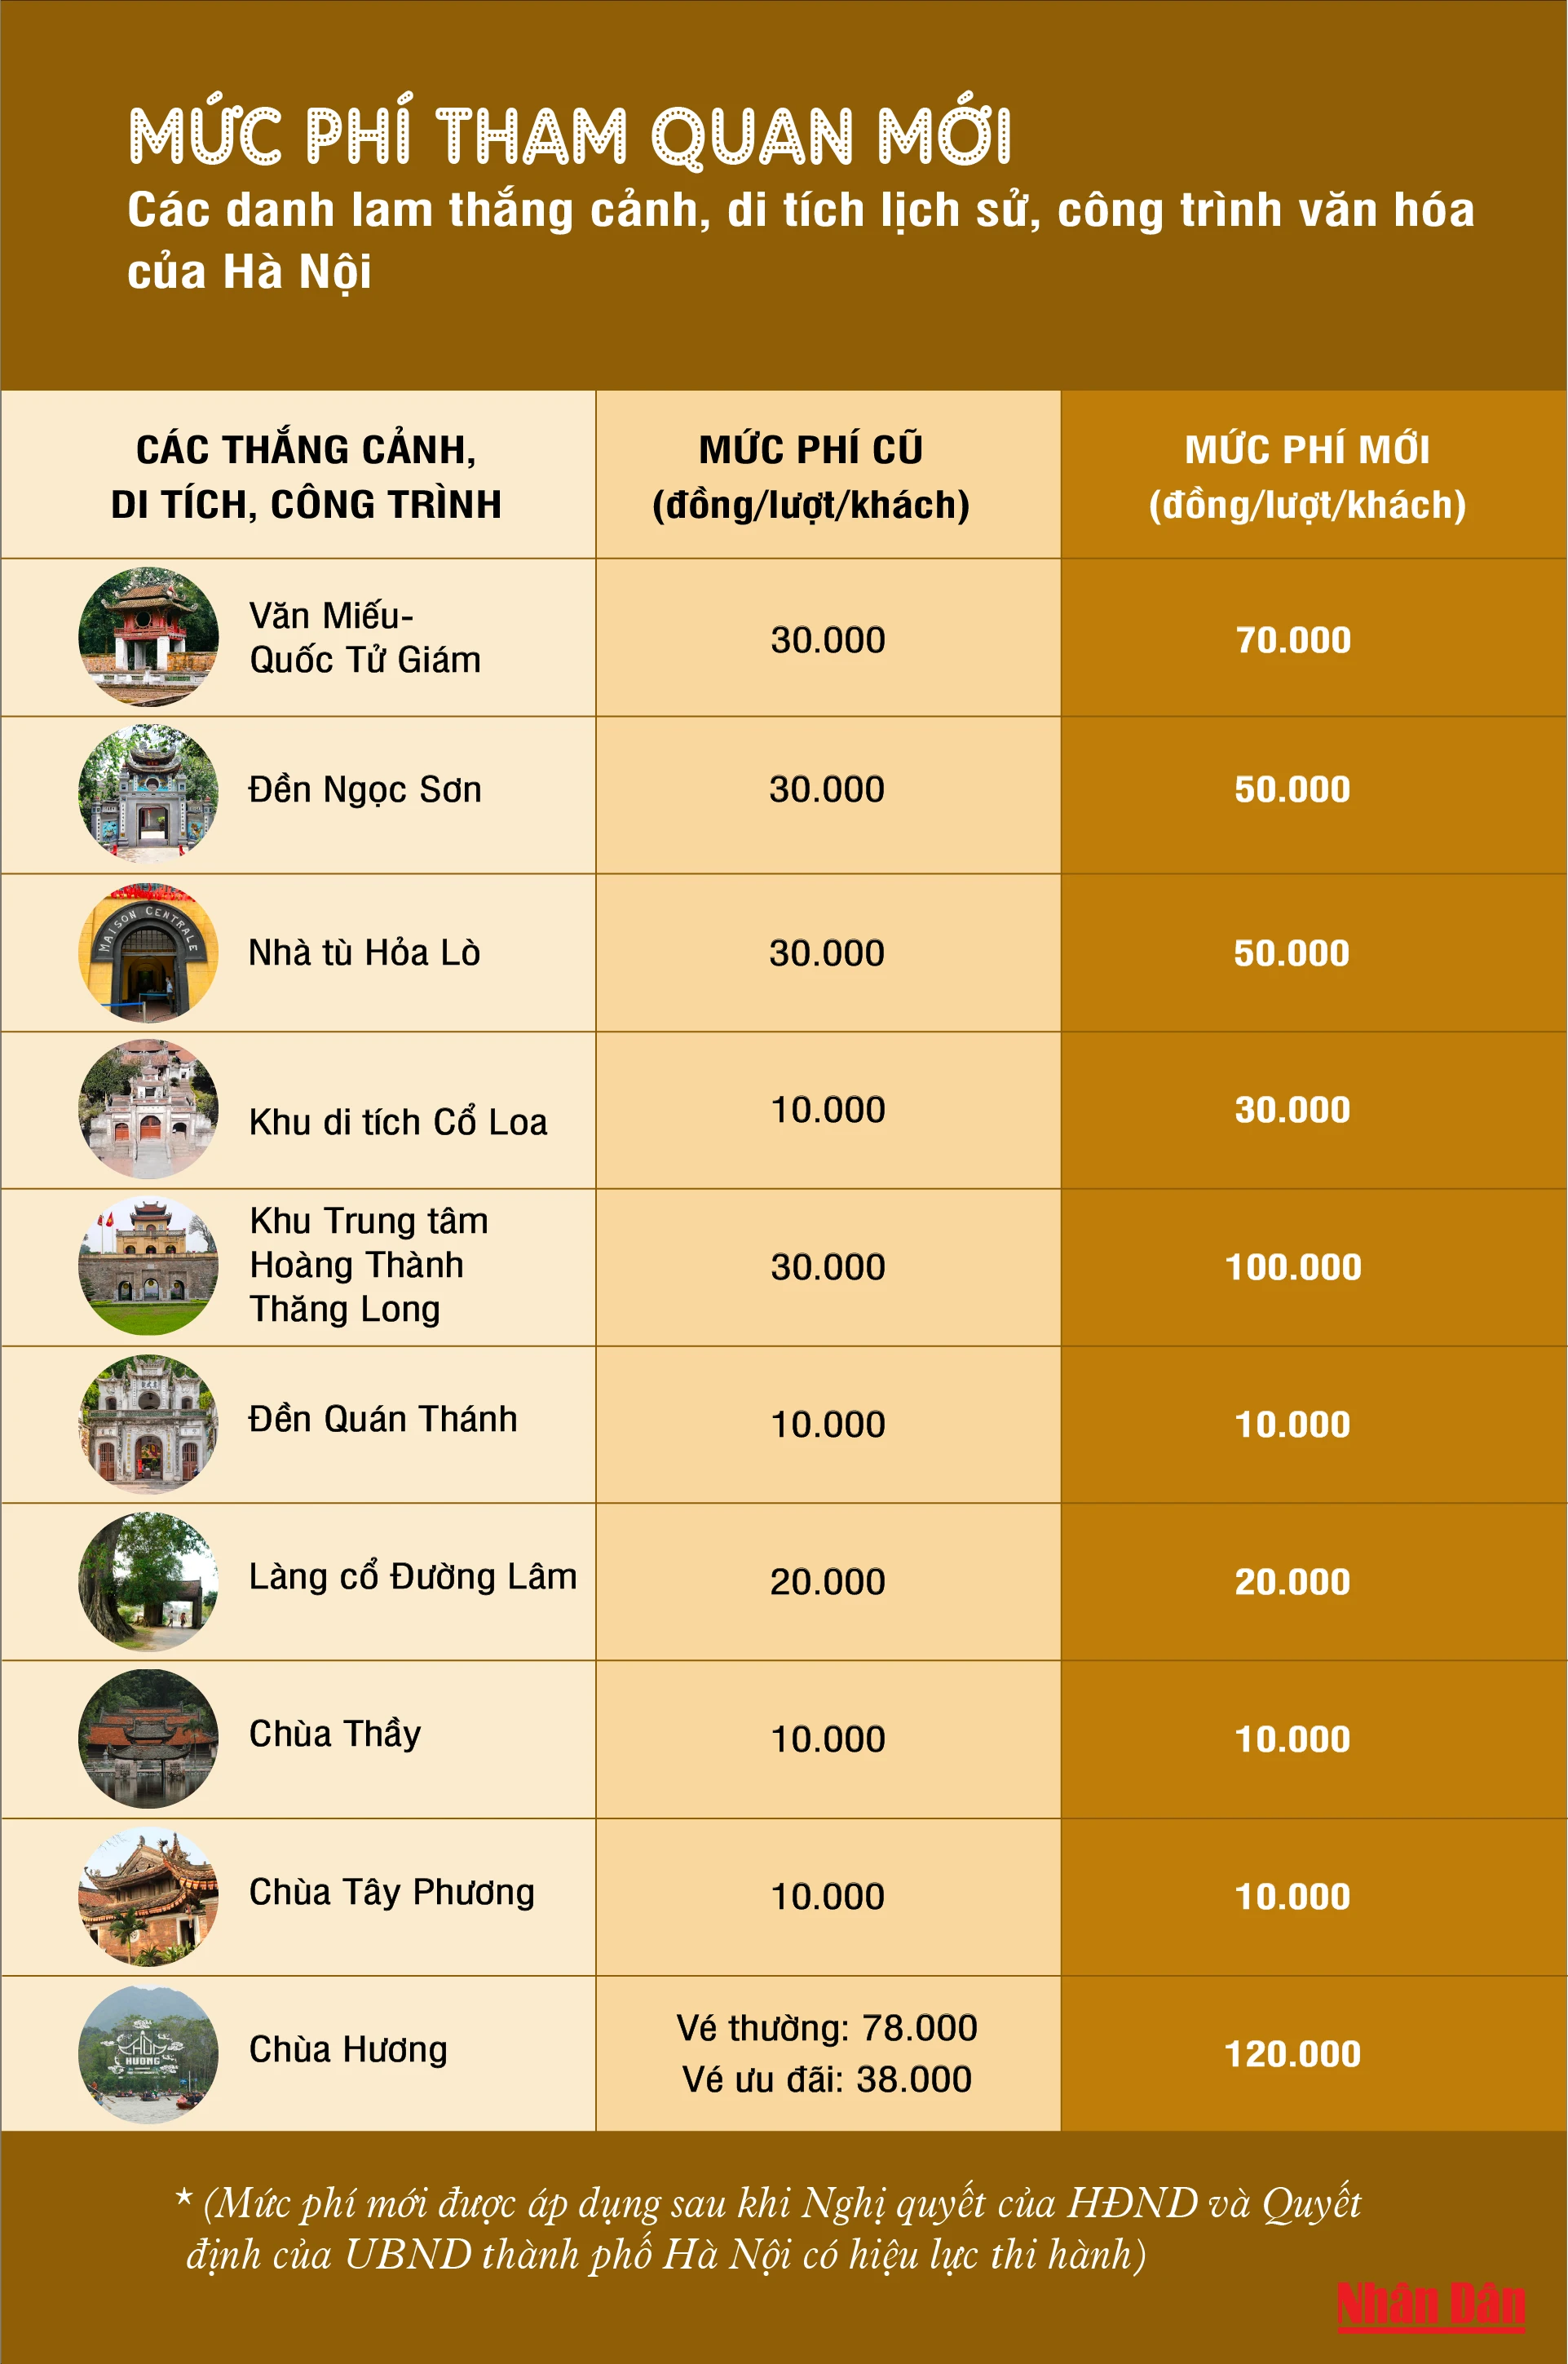 [Infographic] Mức phí tham quan mới các danh lam thắng cảnh, di tích lịch sử của Hà Nội ảnh 1